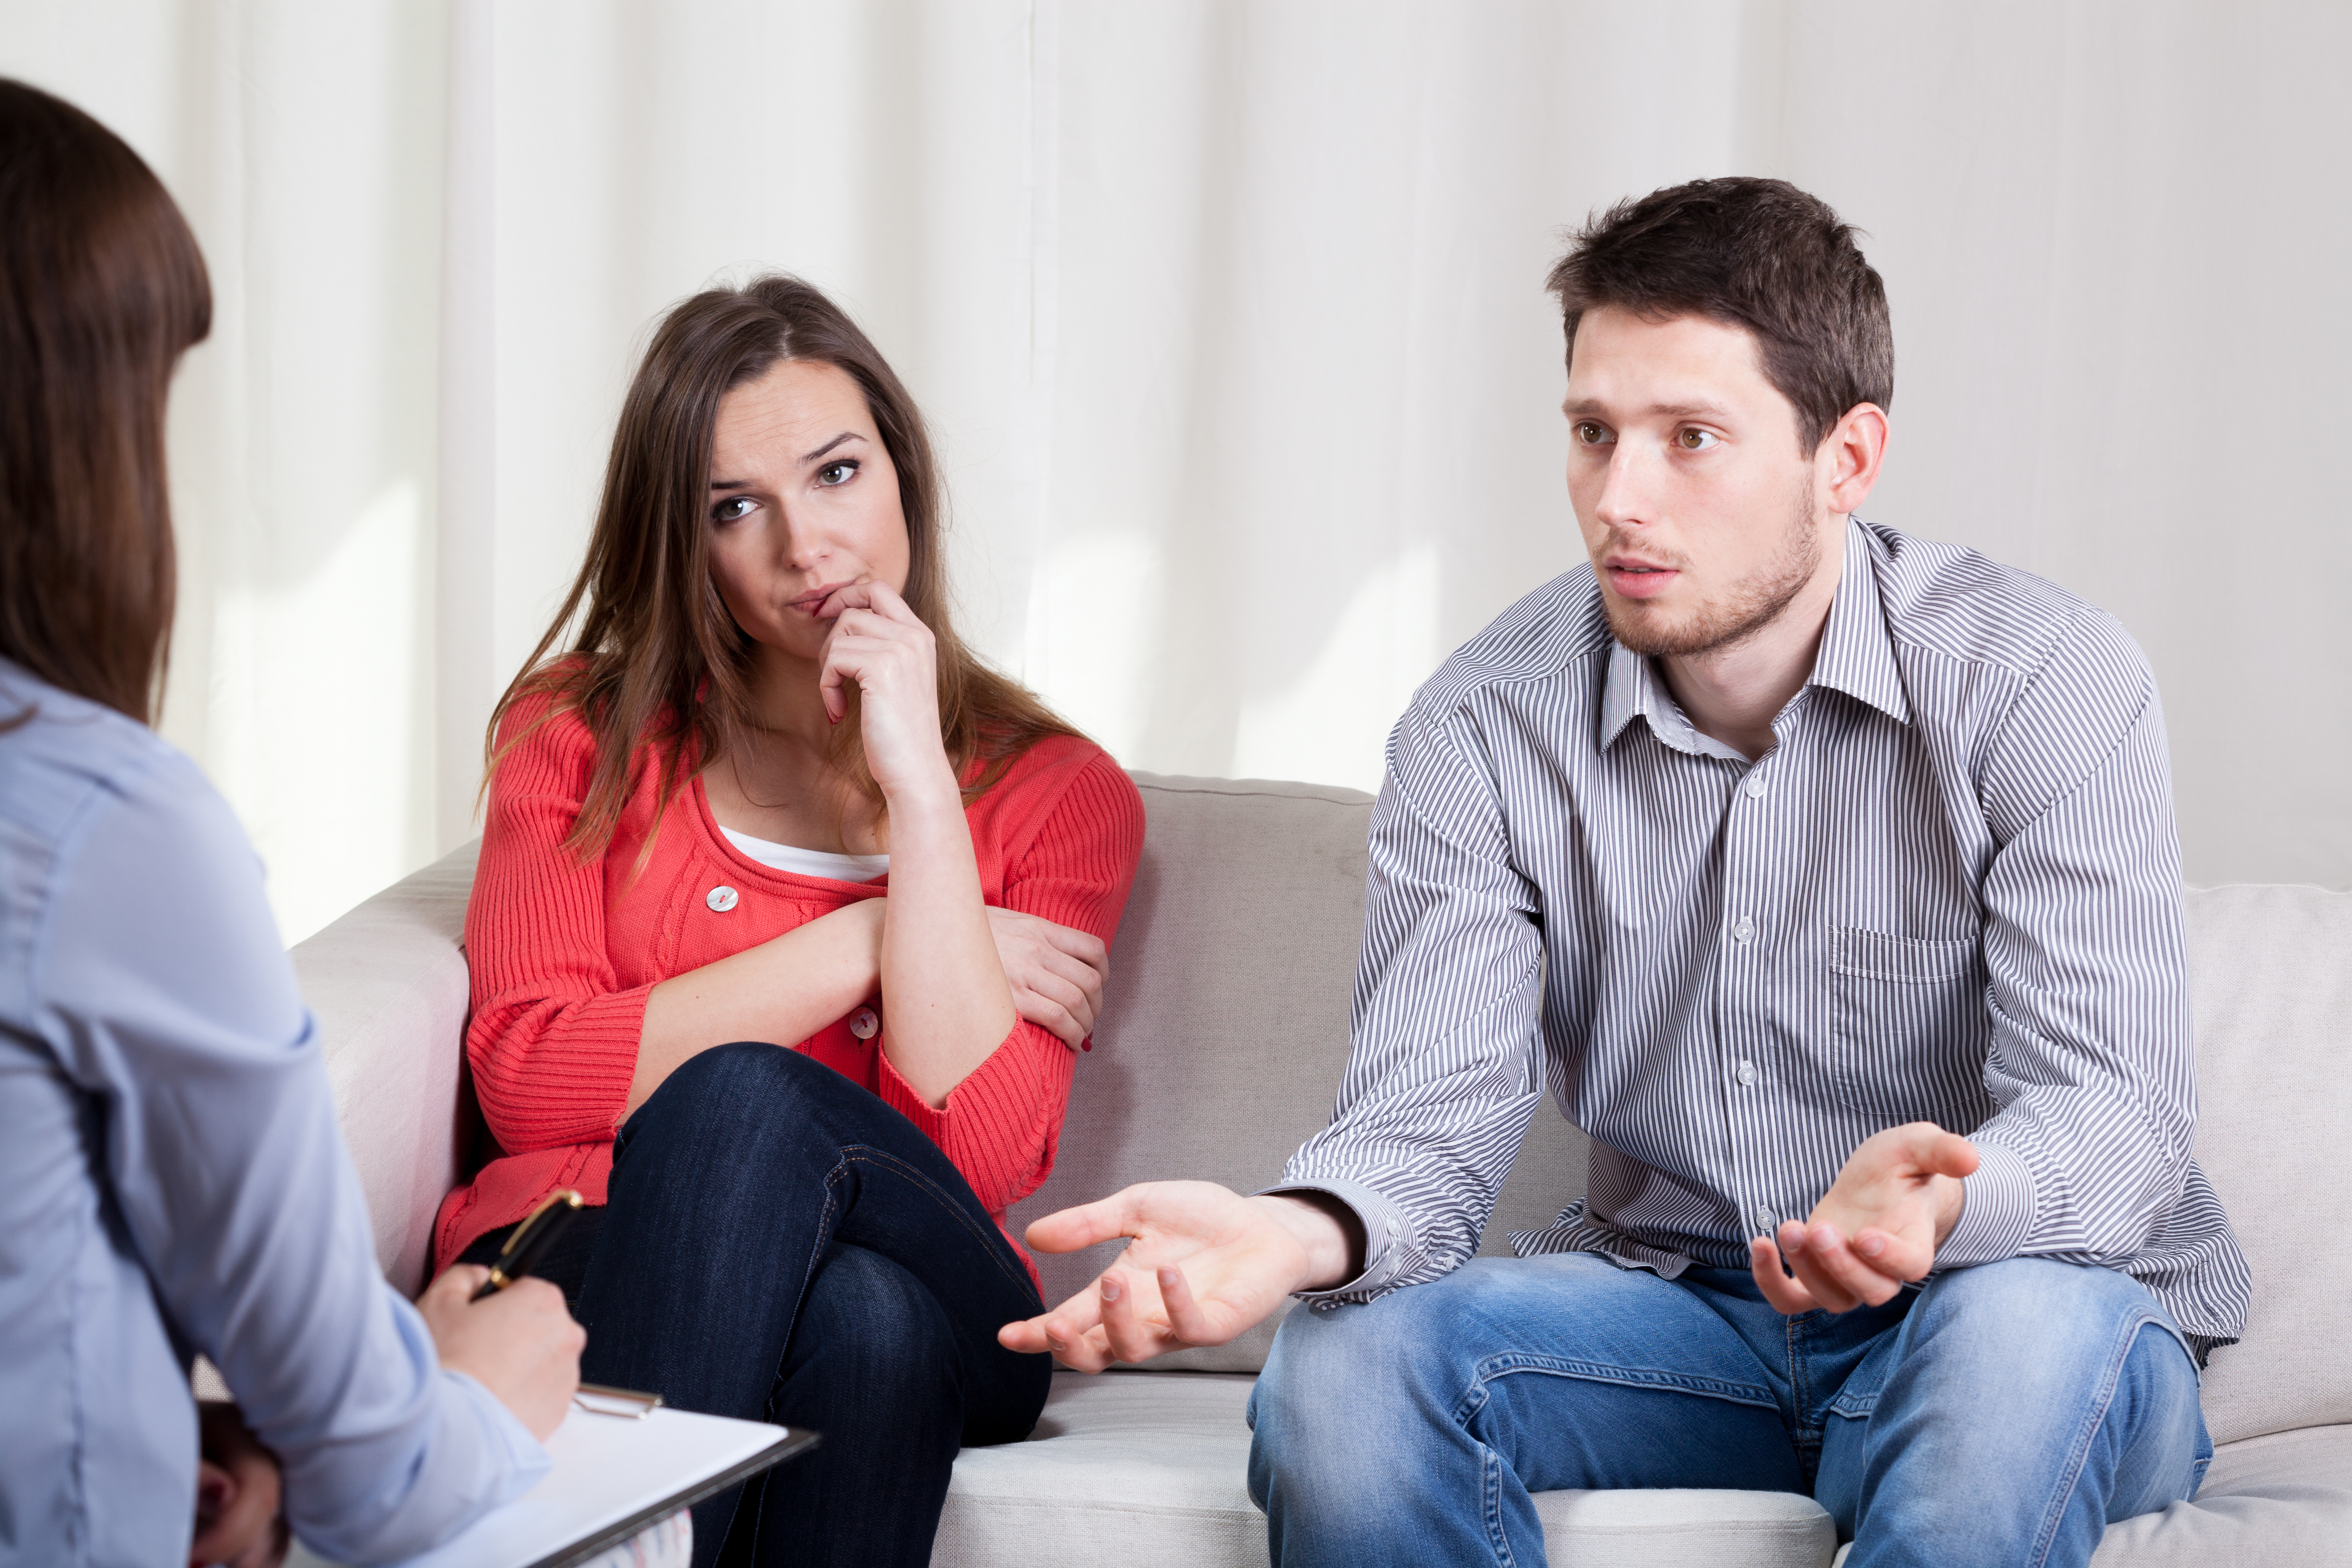 Una pareja triste habla con una mujer | Fuente: Shutterstock.com